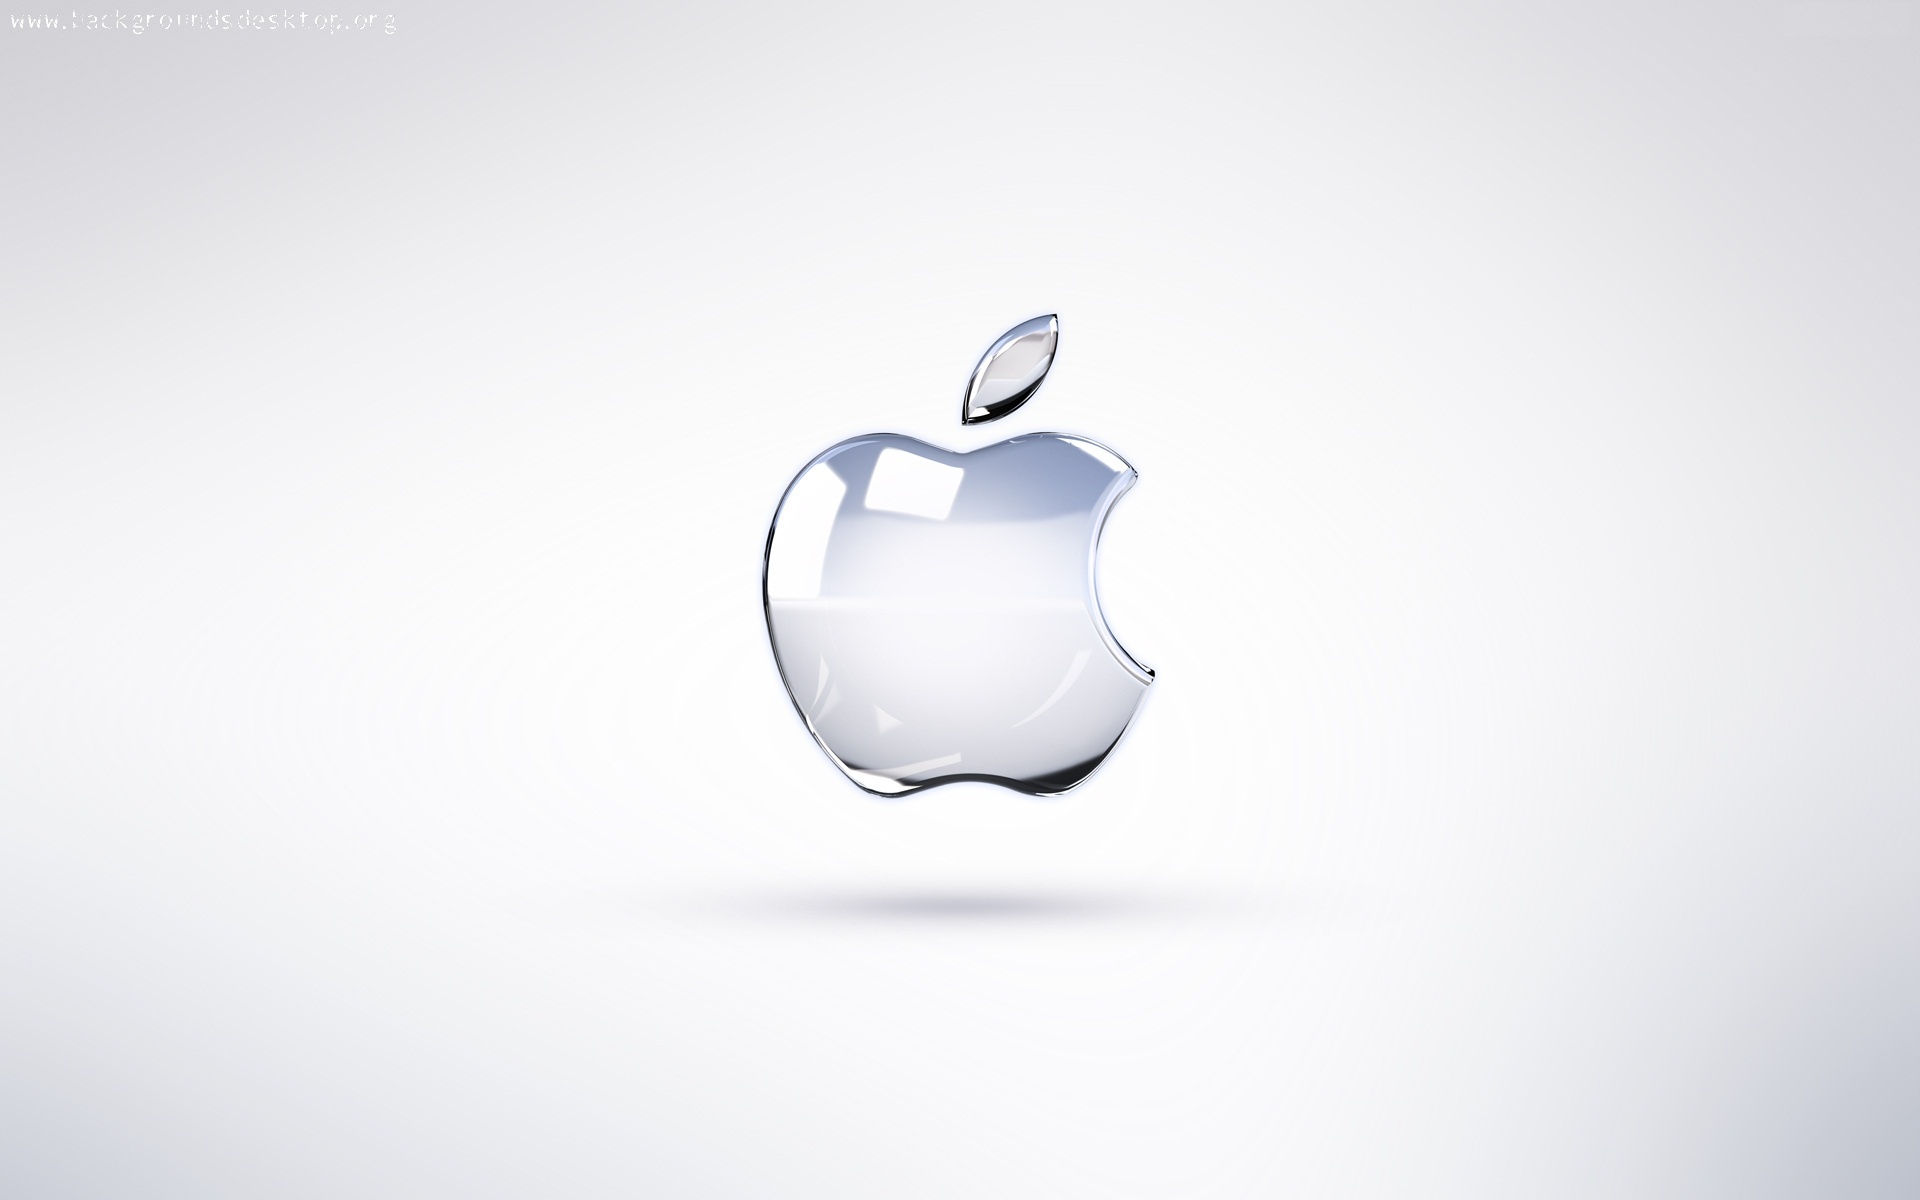 Por qué el logo de Apple es una manzana mordida? - Astrolabio